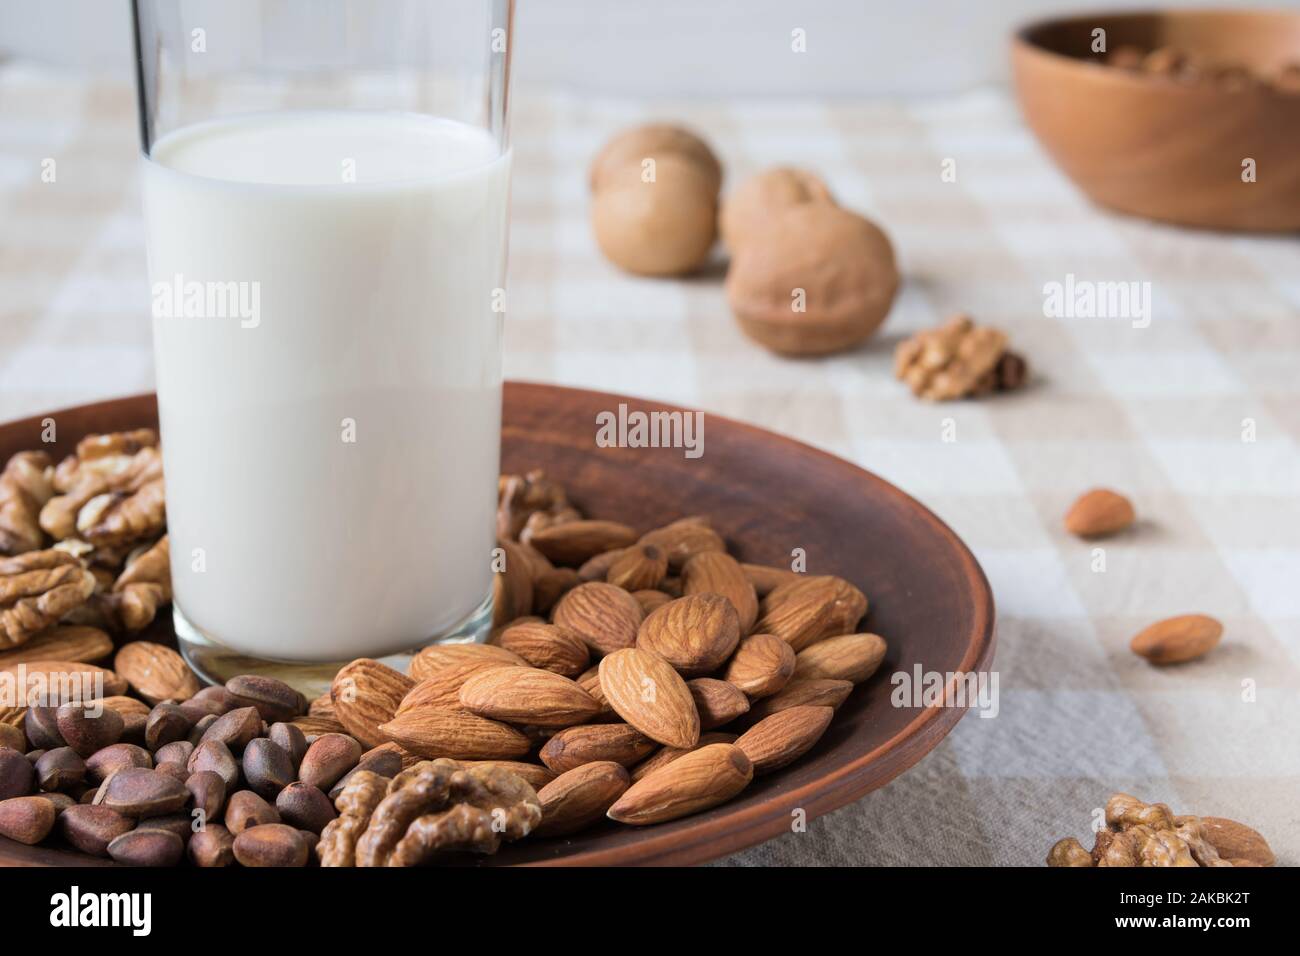 Concept de saine alimentation, amandes, noix de pin, les noix et un verre de lait dans une assiette sur la table Banque D'Images